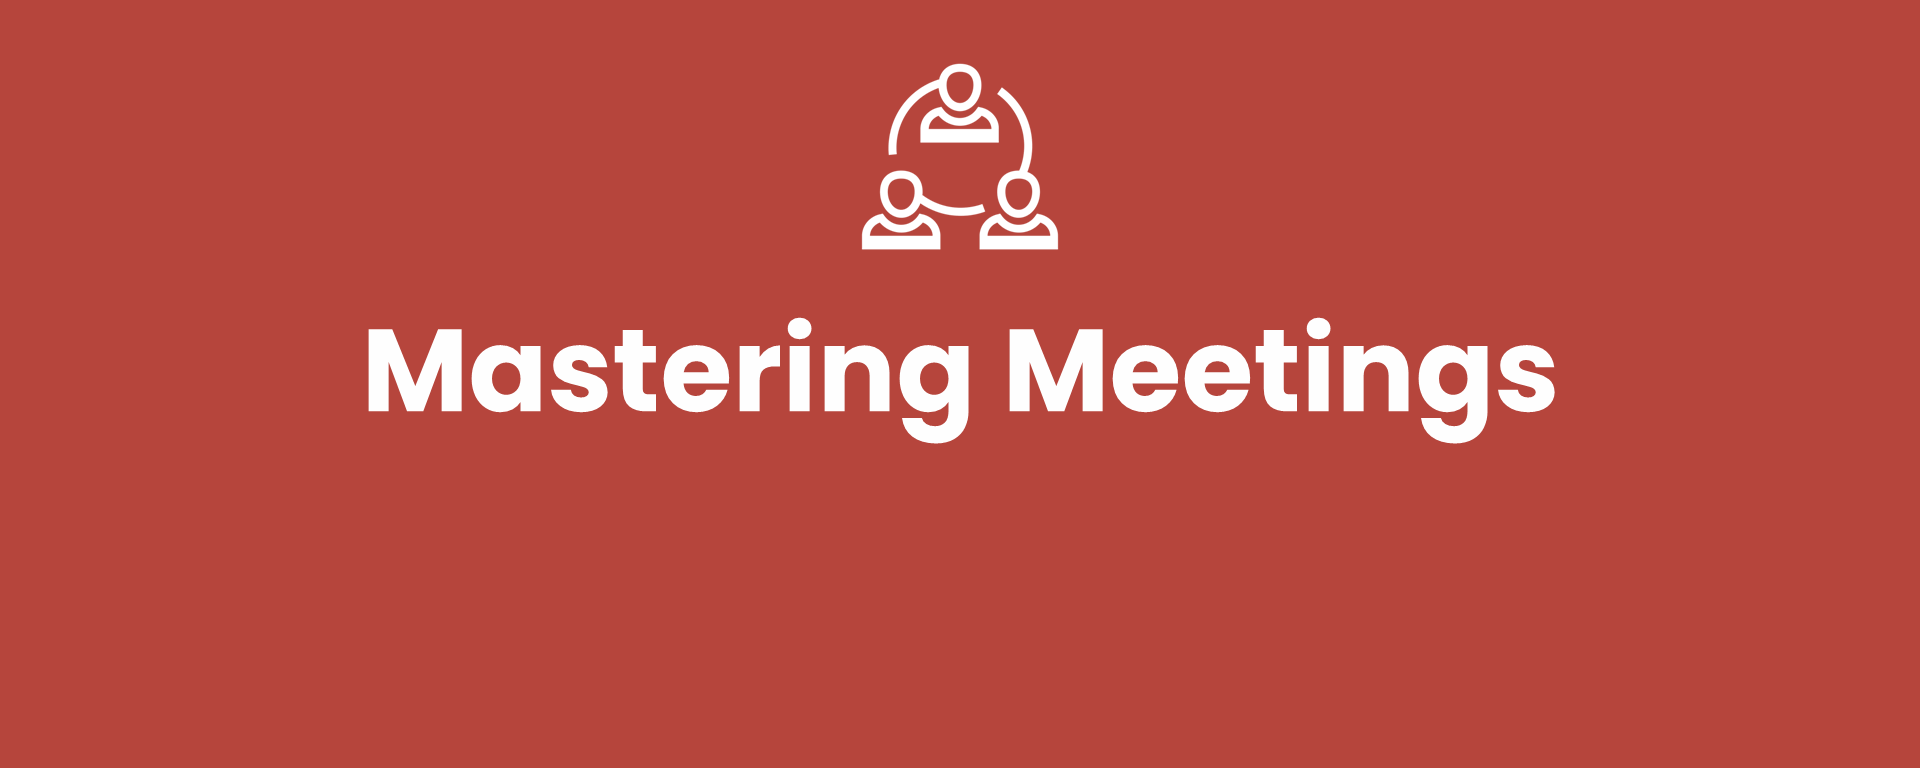 Mastering Meetings